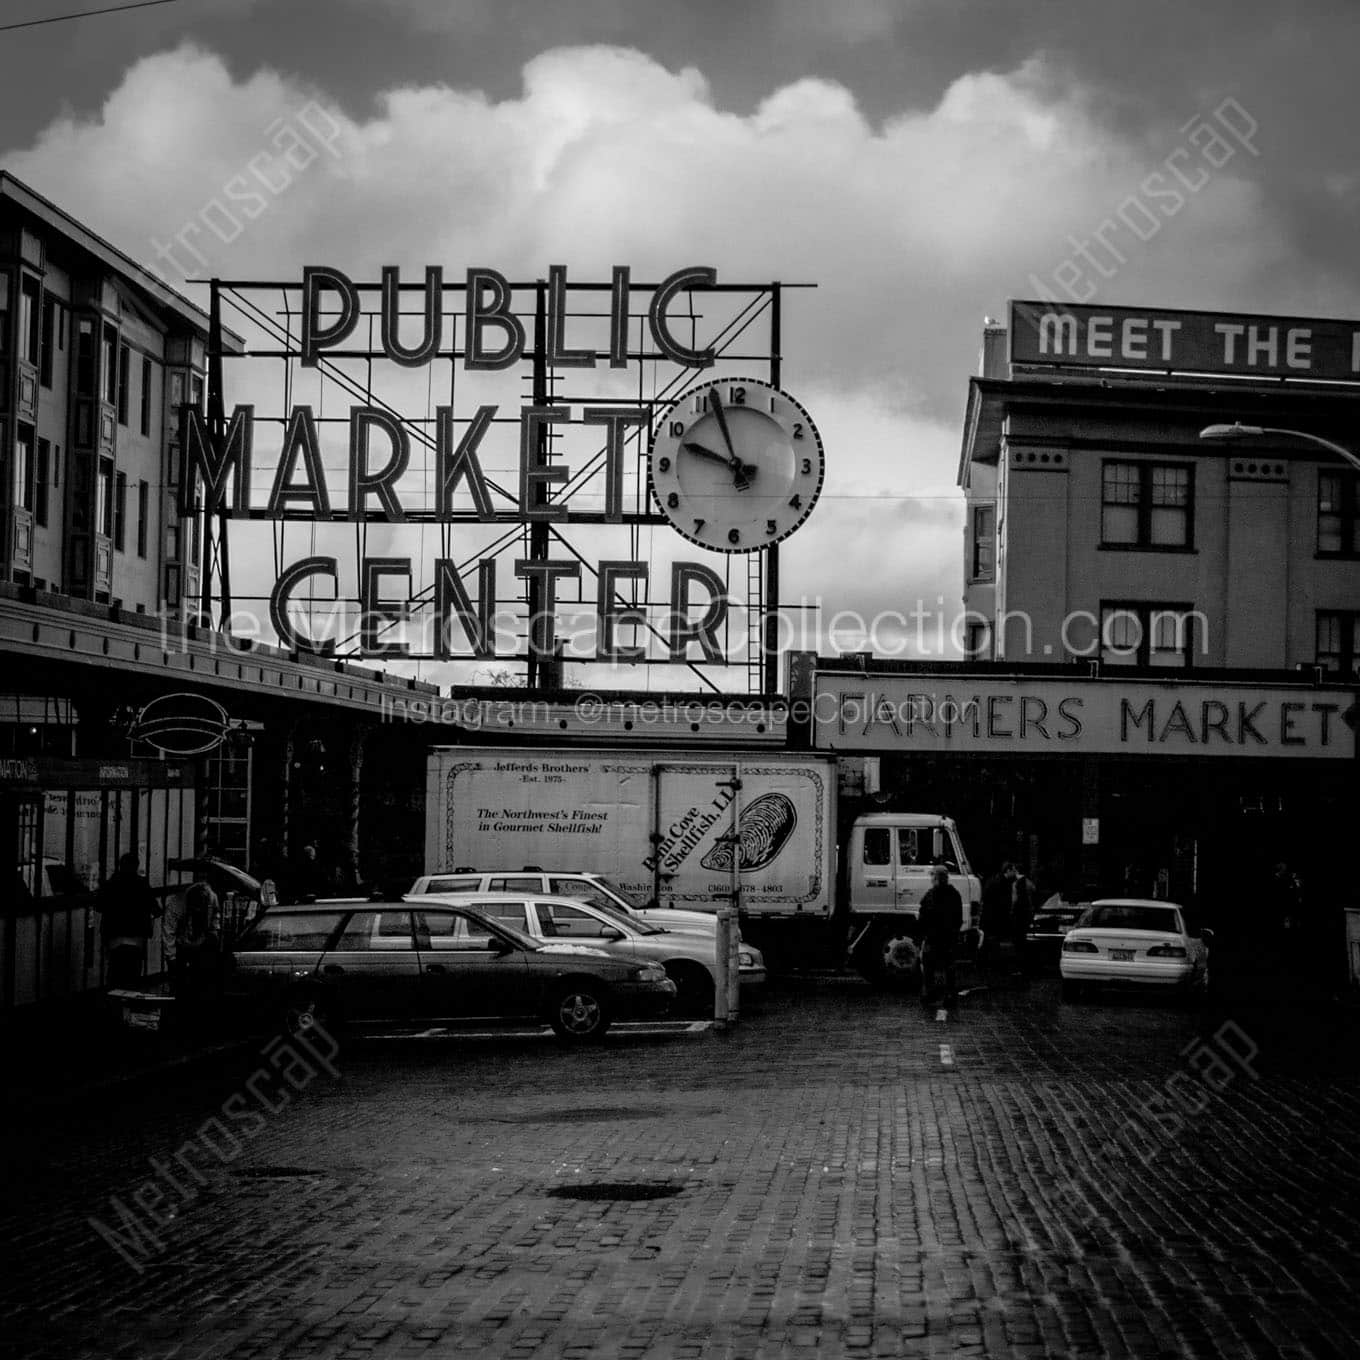 public market center sign Black & White Office Art